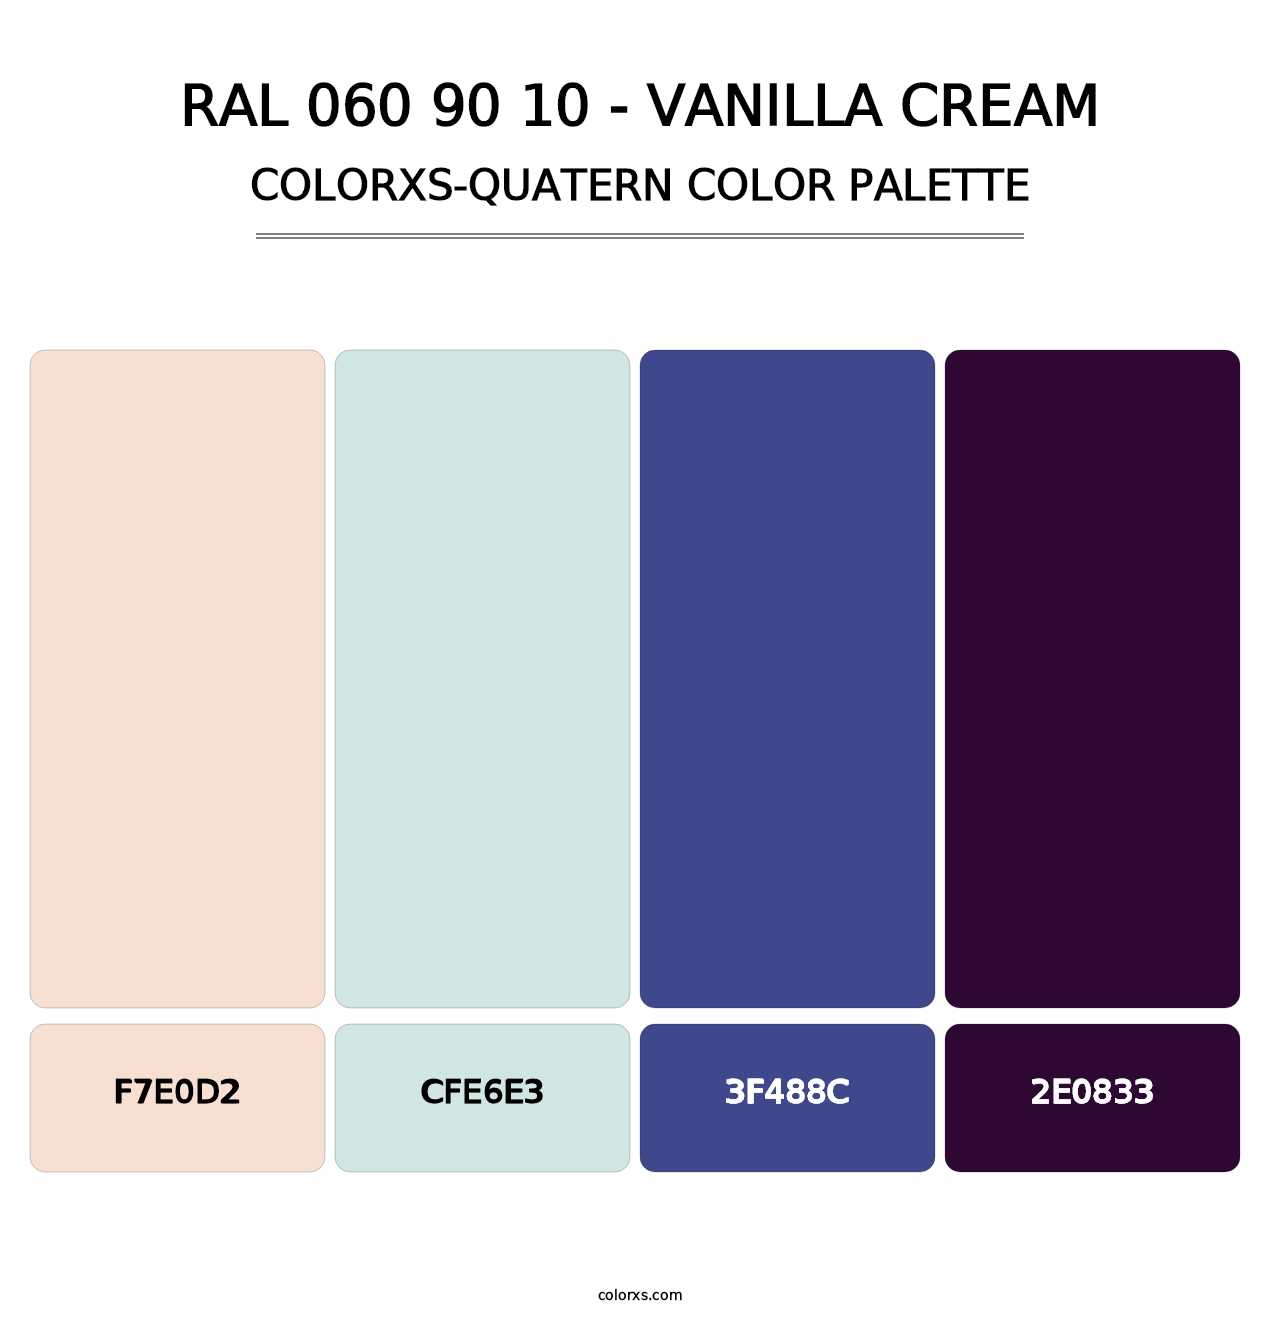 RAL 060 90 10 - Vanilla Cream - Colorxs Quatern Palette